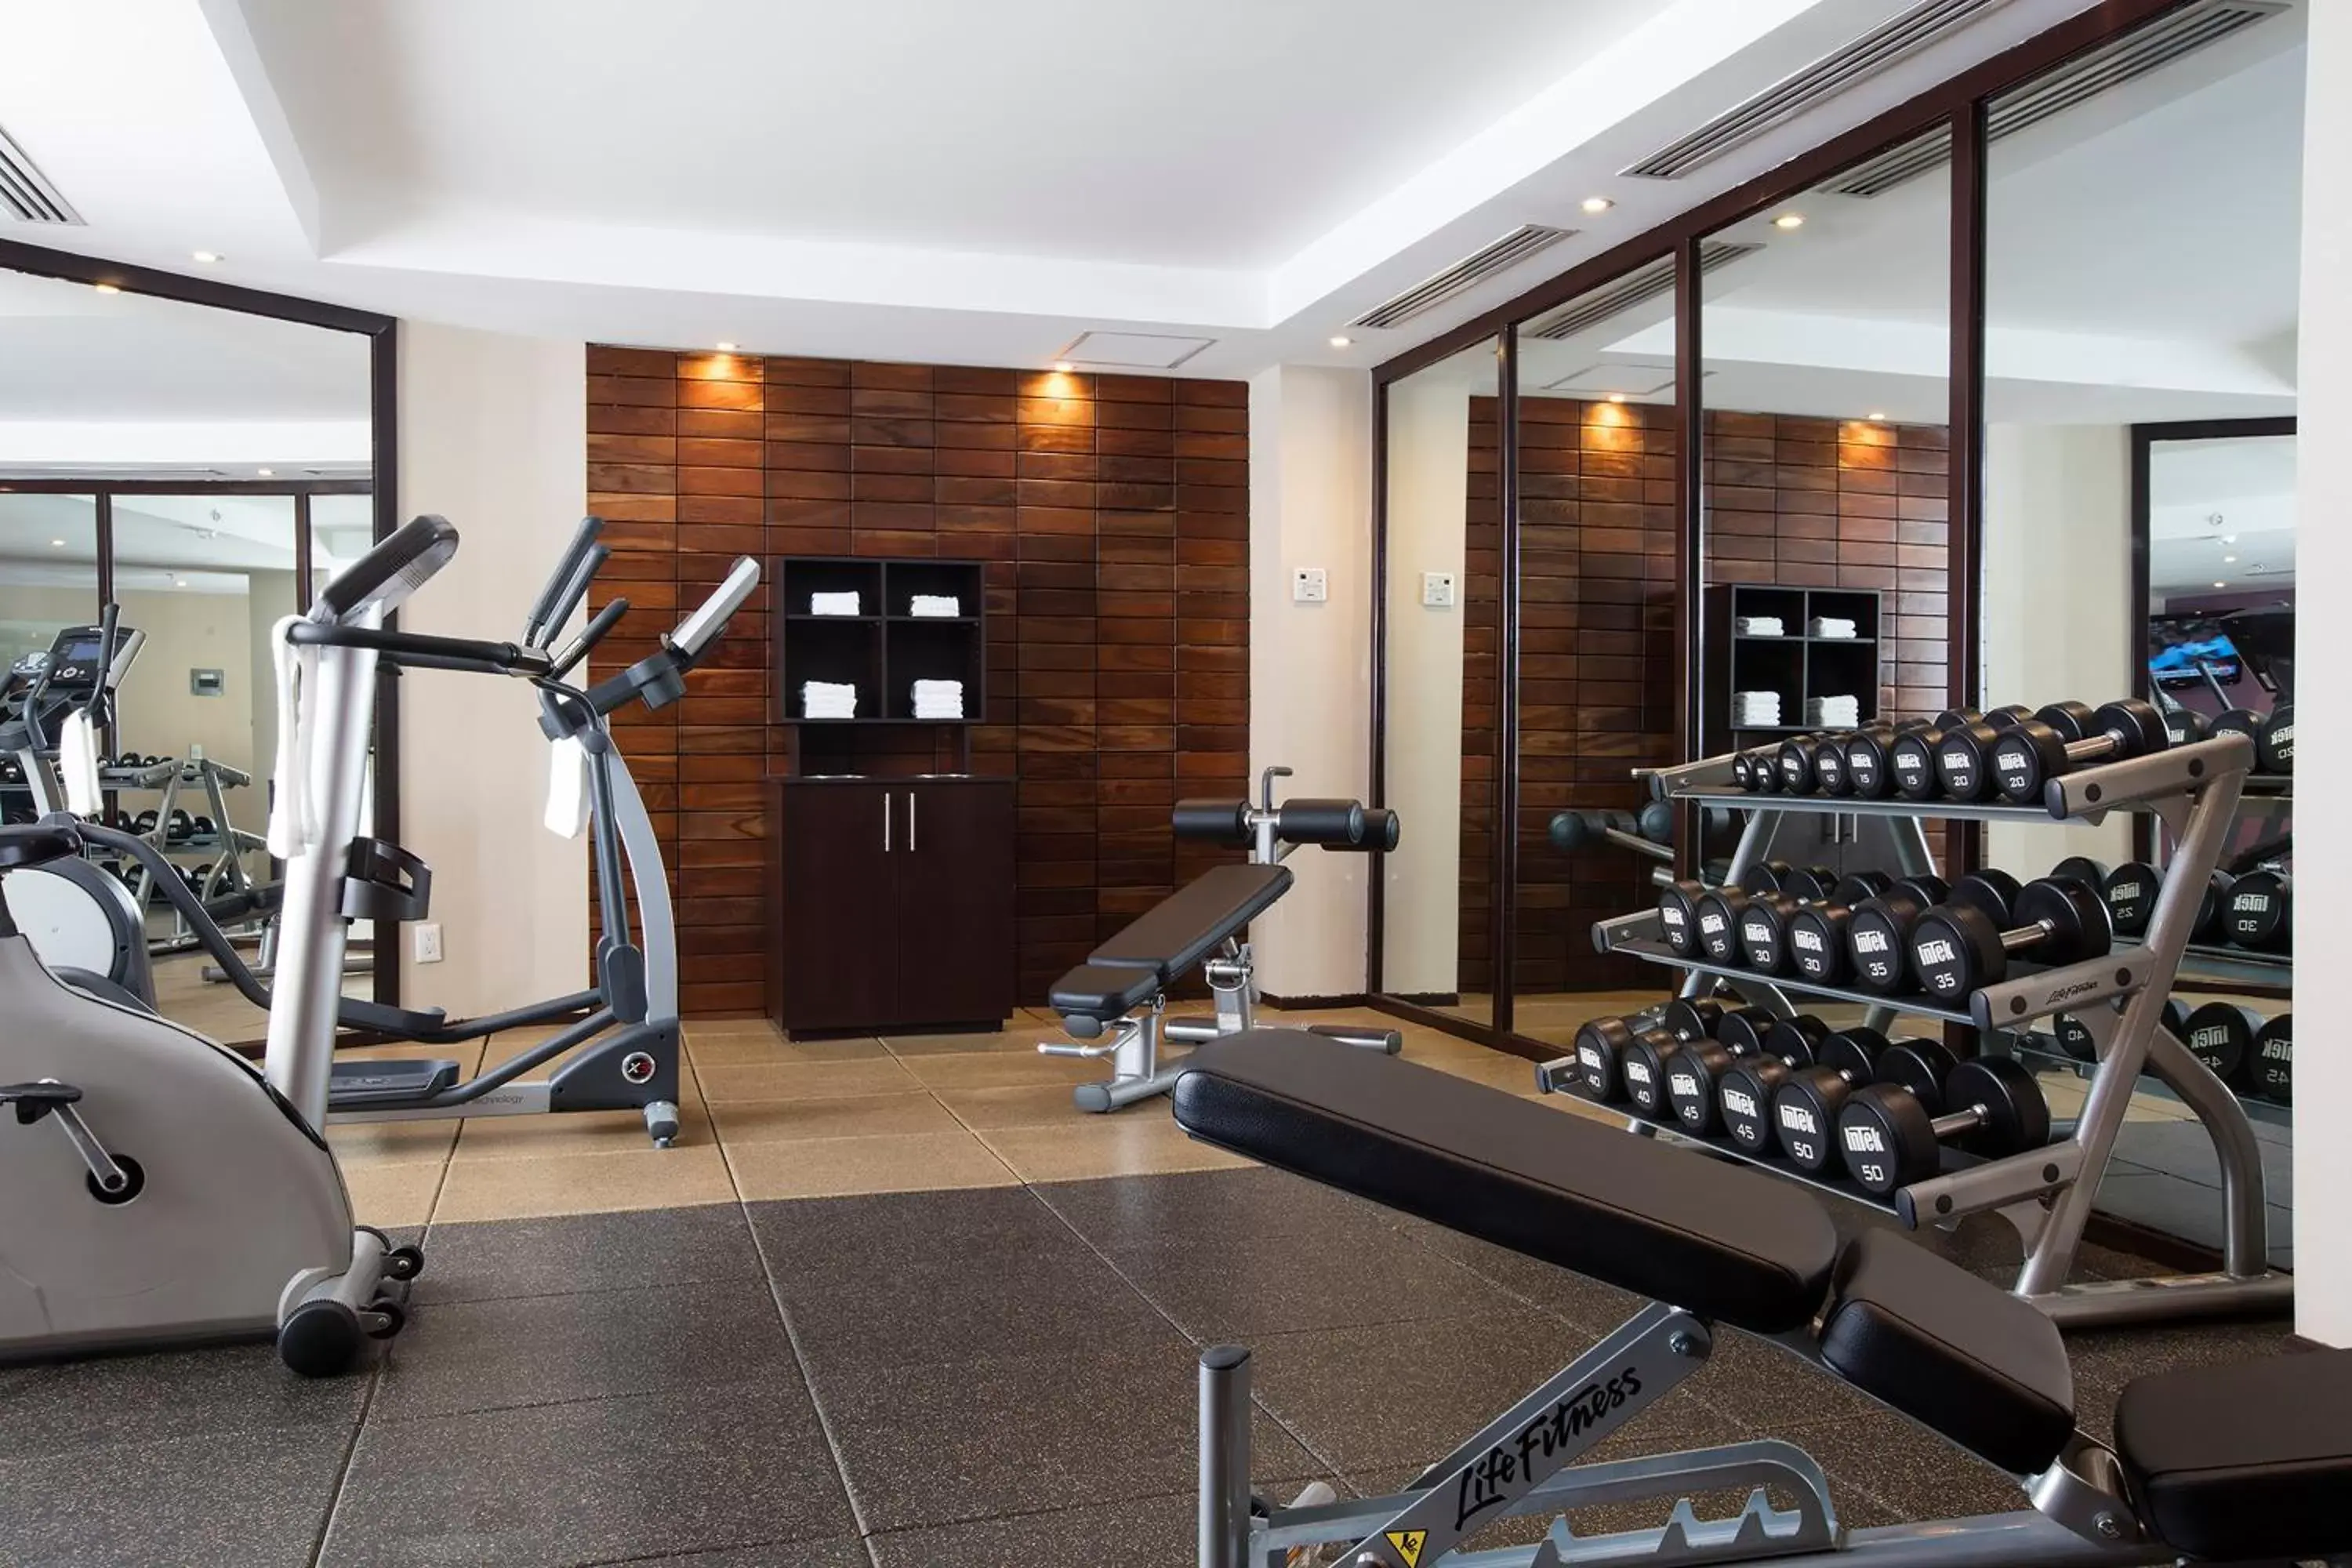 Fitness centre/facilities, Fitness Center/Facilities in Krystal Urban Aeropuerto Ciudad de Mexico